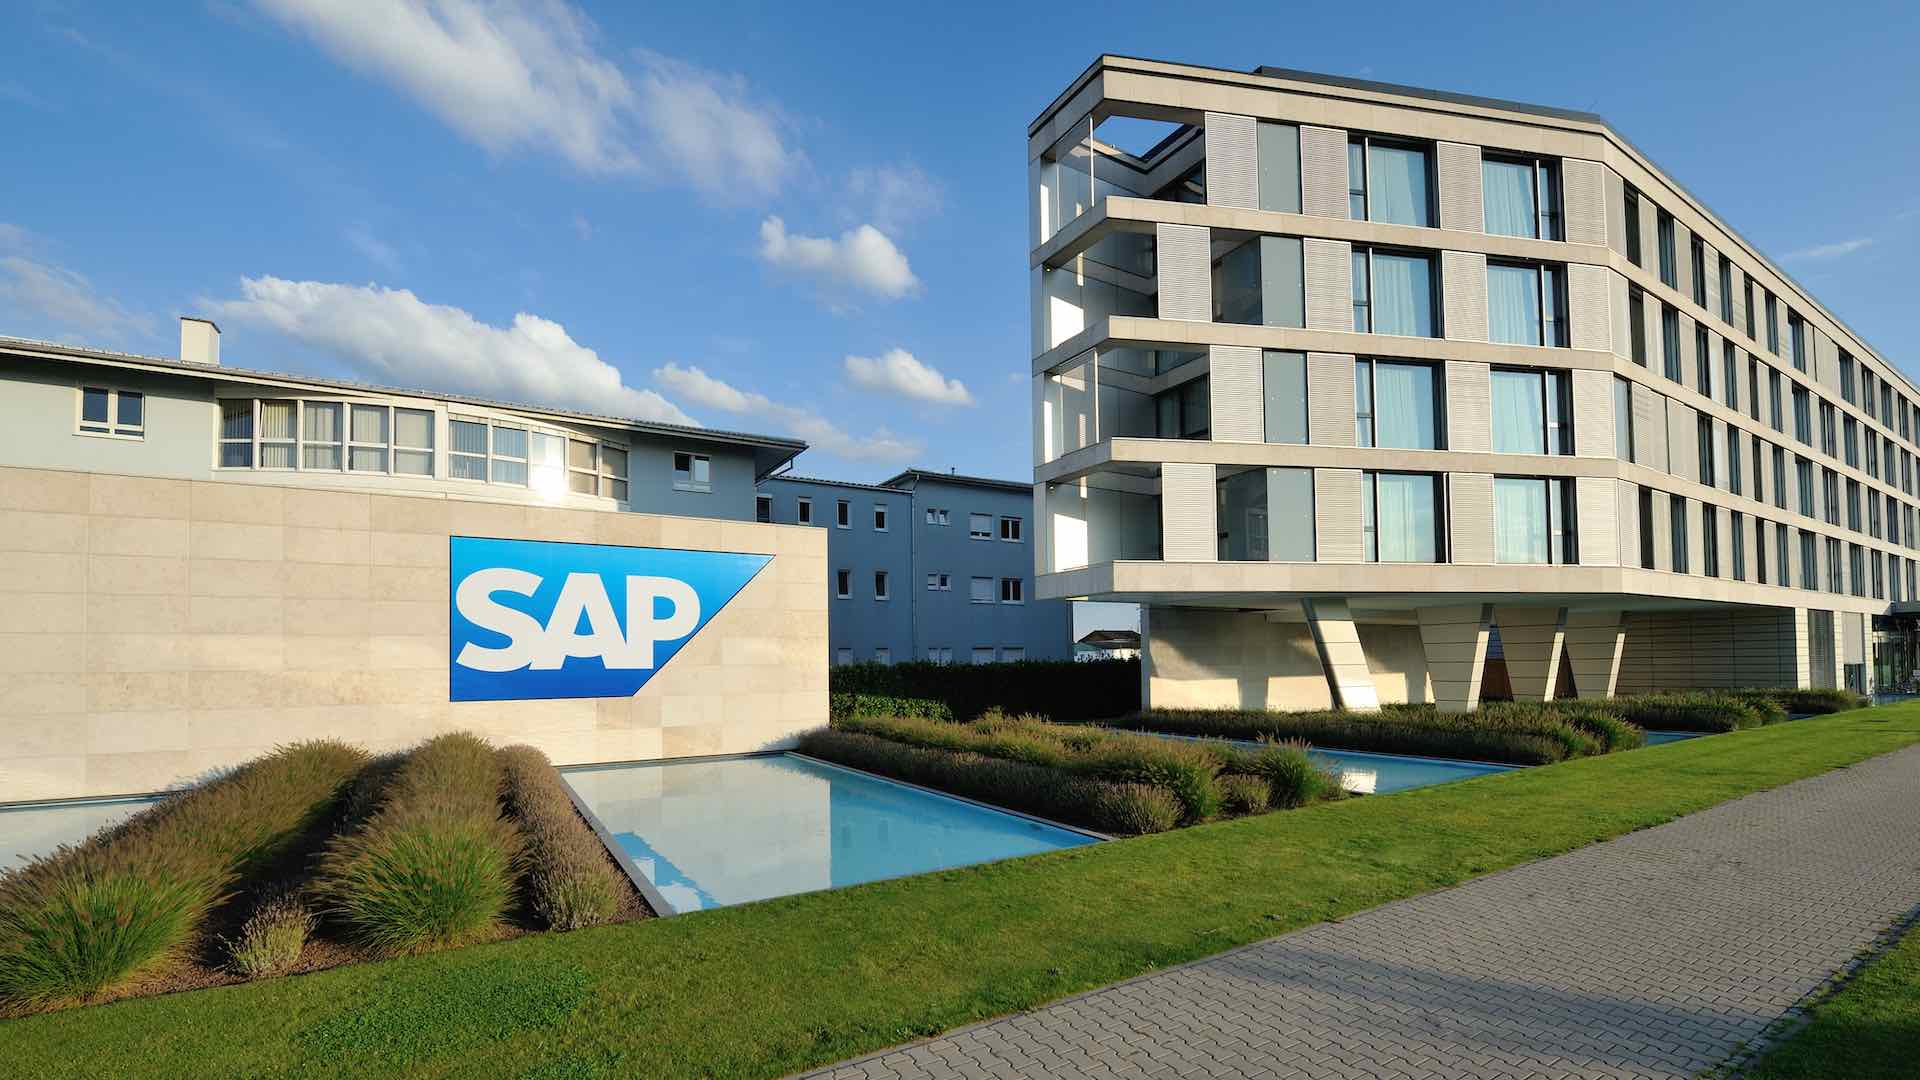 SAP 斥资 20 亿欧元进行人工智能转型